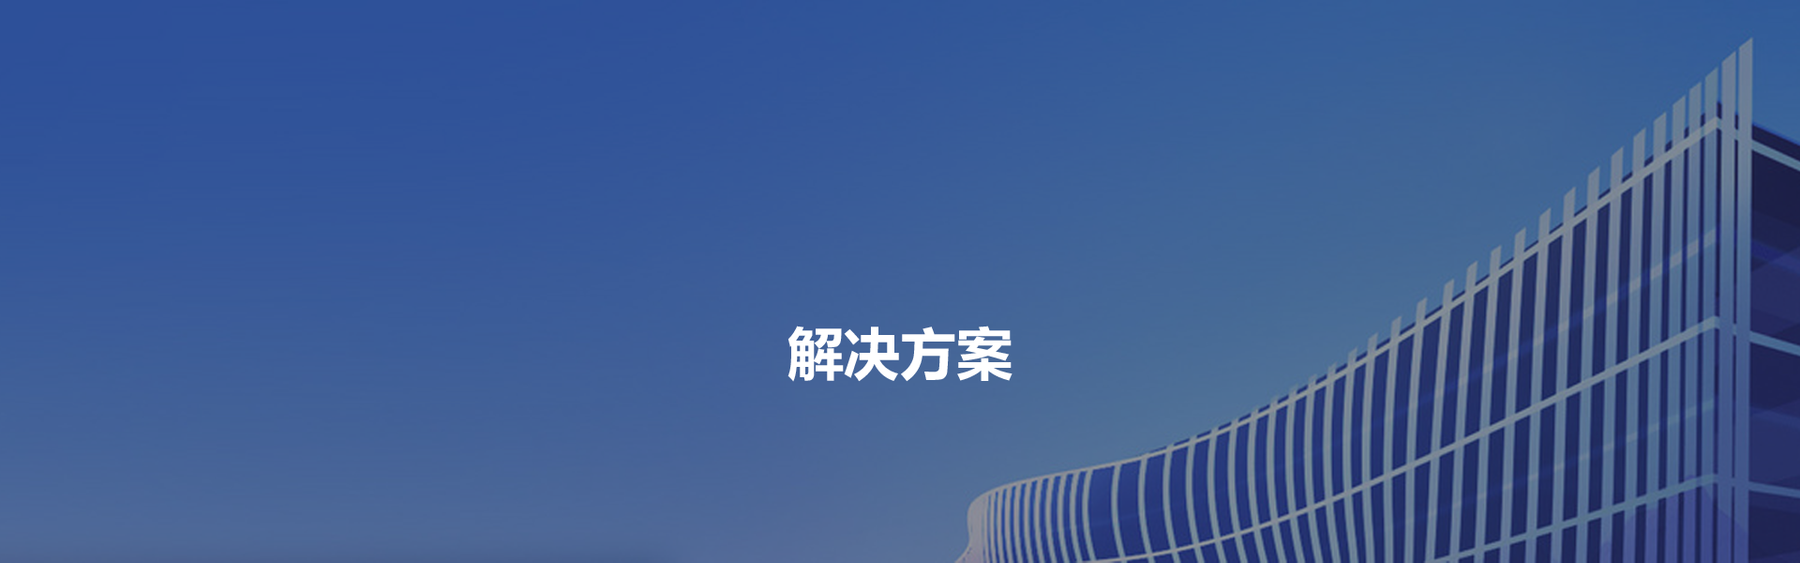 Z6尊龙·凯时(中国)-官方网站_image9881